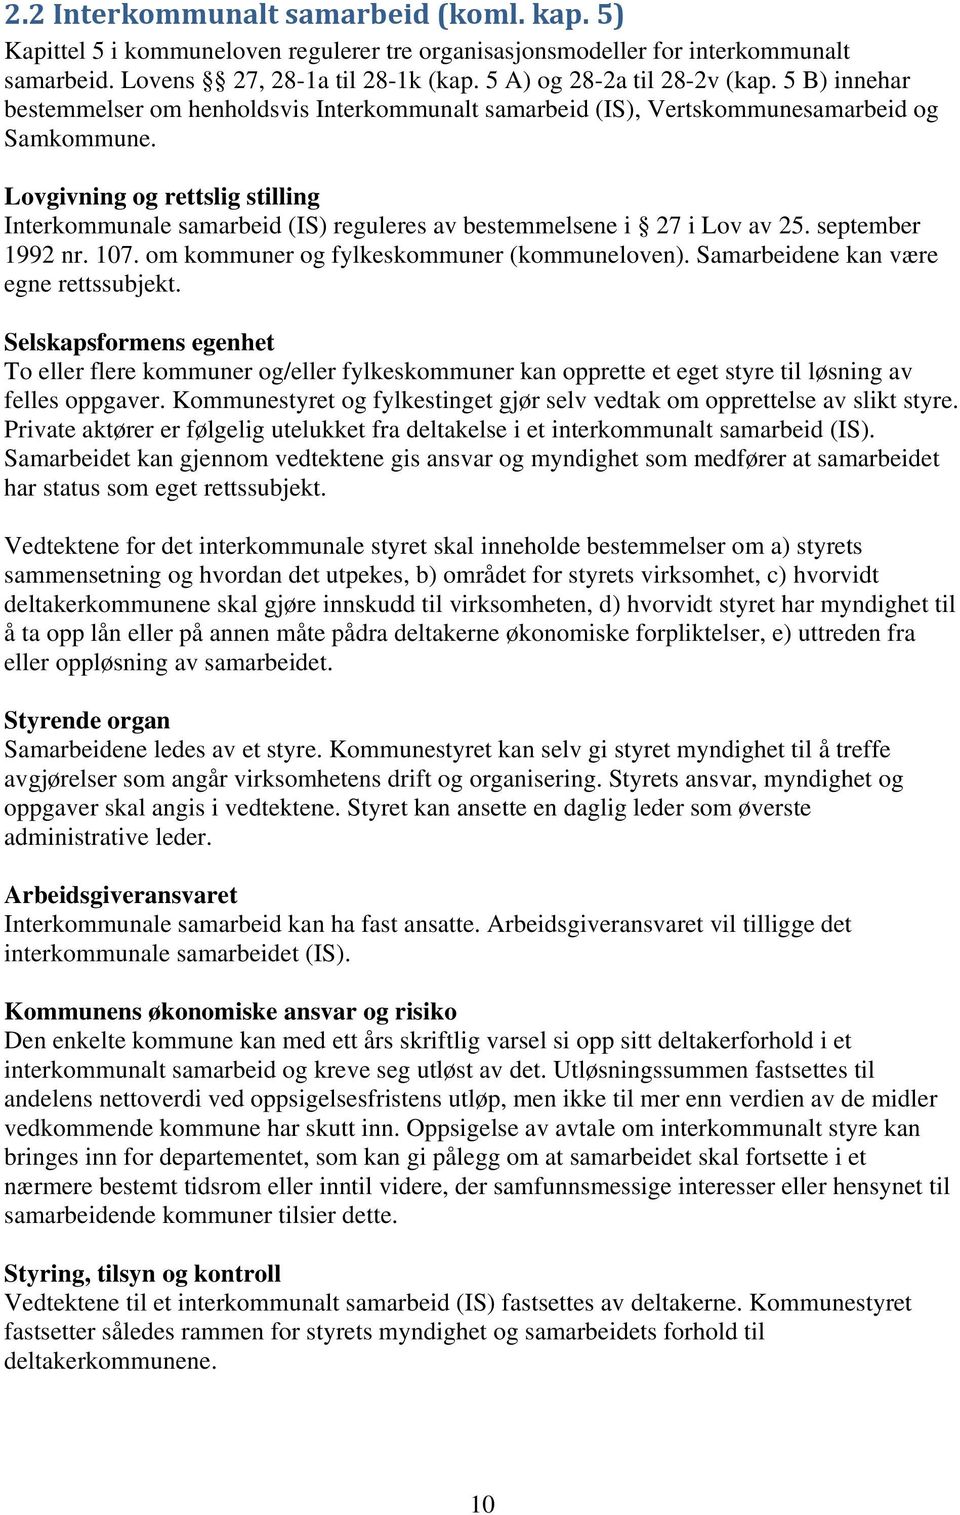 Lovgivning og rettslig stilling Interkommunale samarbeid (IS) reguleres av bestemmelsene i 27 i Lov av 25. september 1992 nr. 107. om kommuner og fylkeskommuner (kommuneloven).